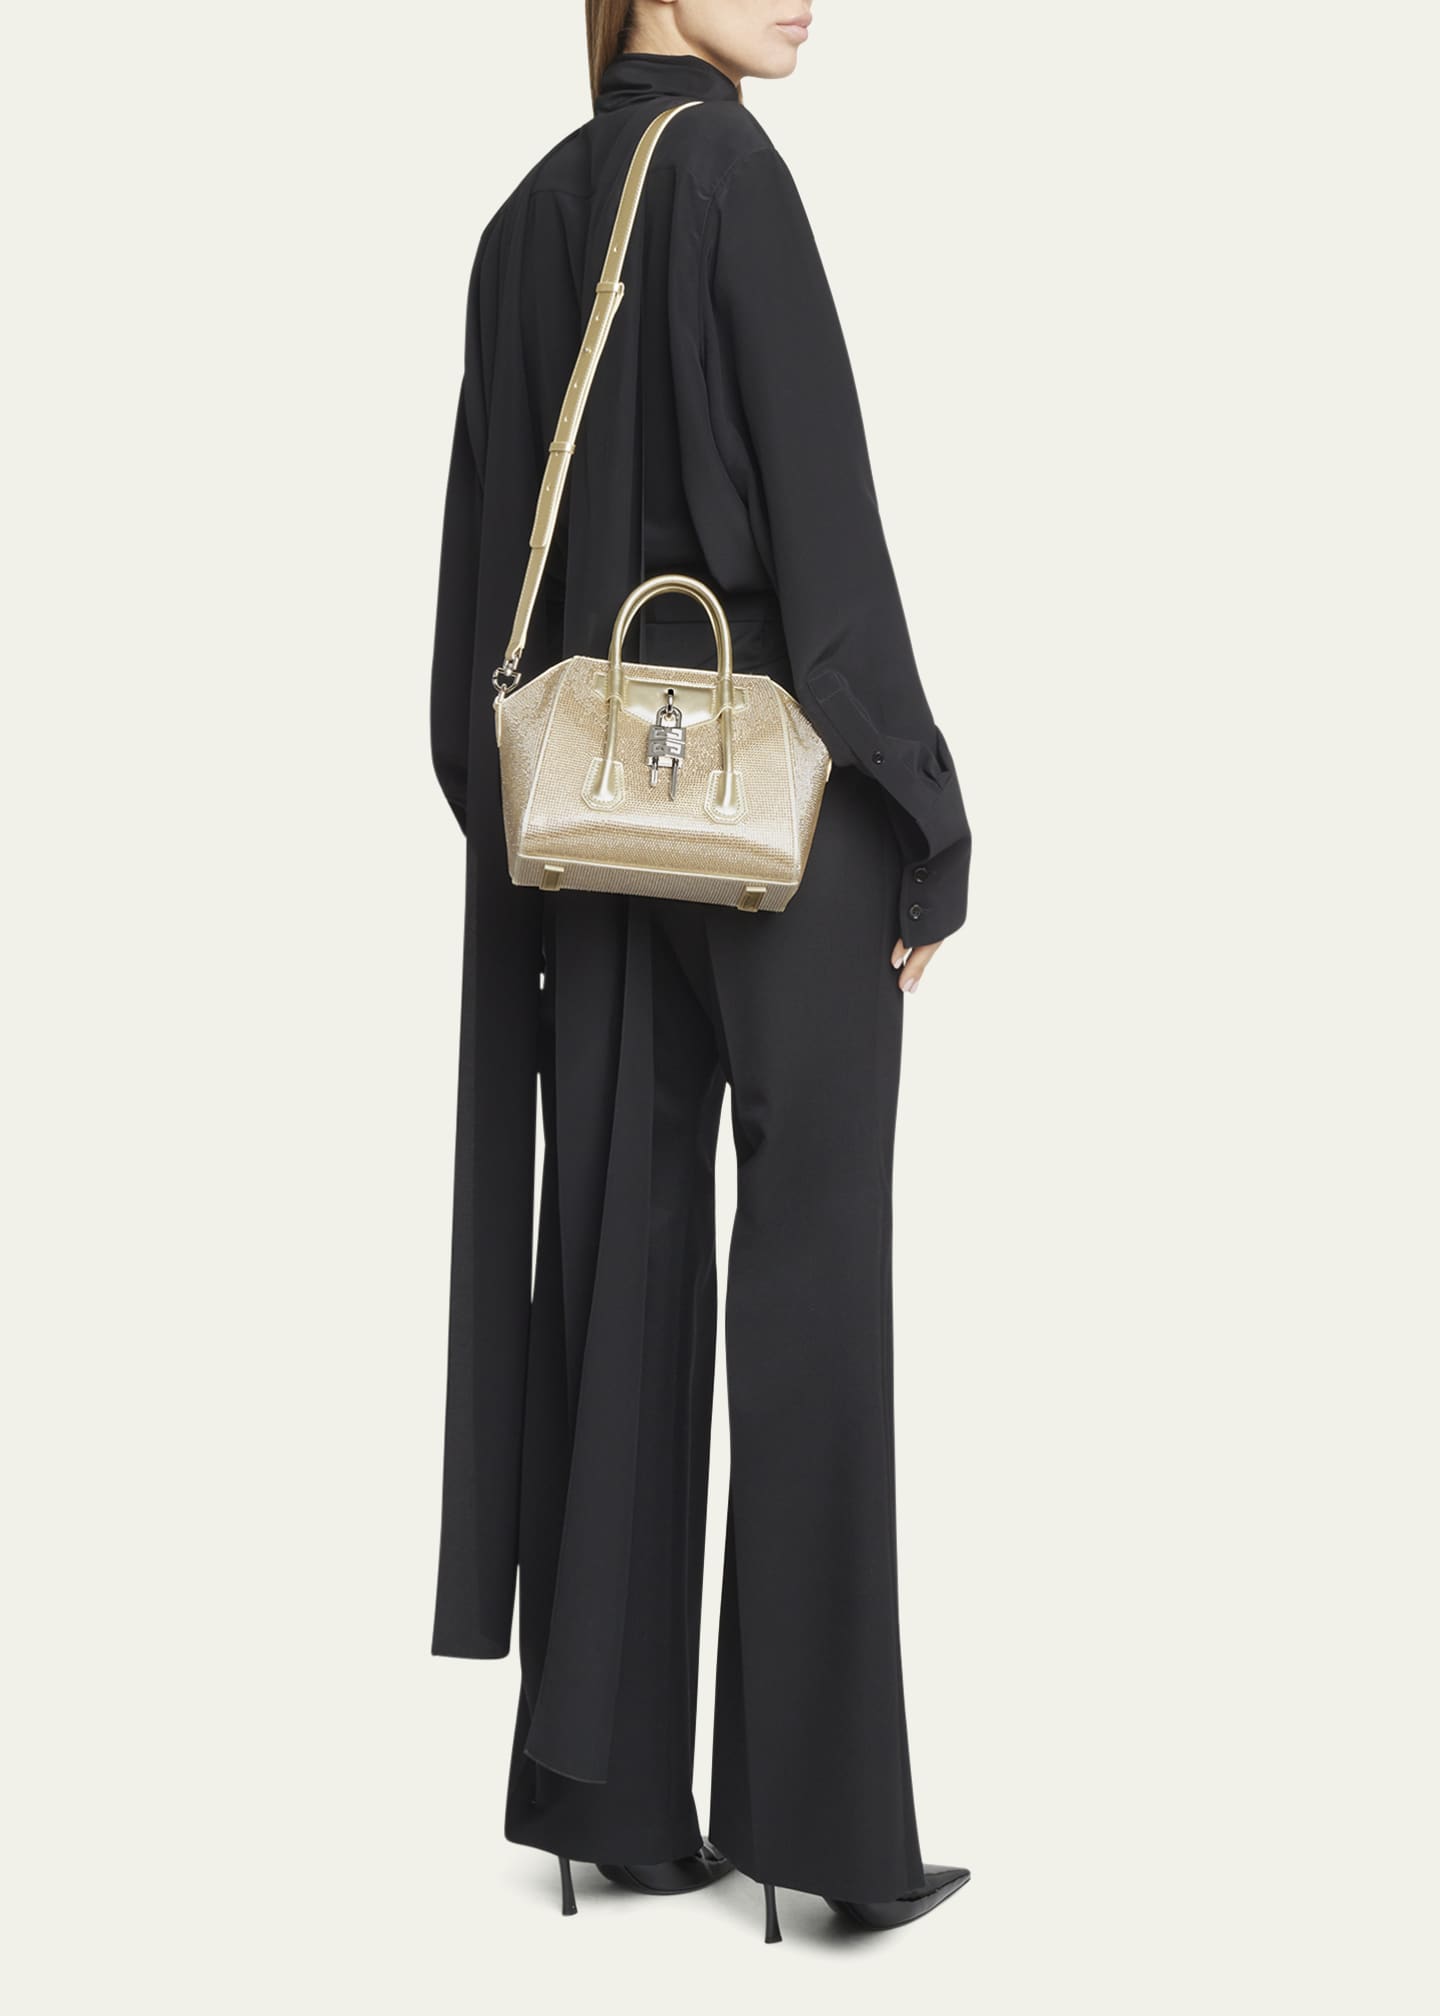 Givenchy Antigona Leather Clutch Bag - Farfetch